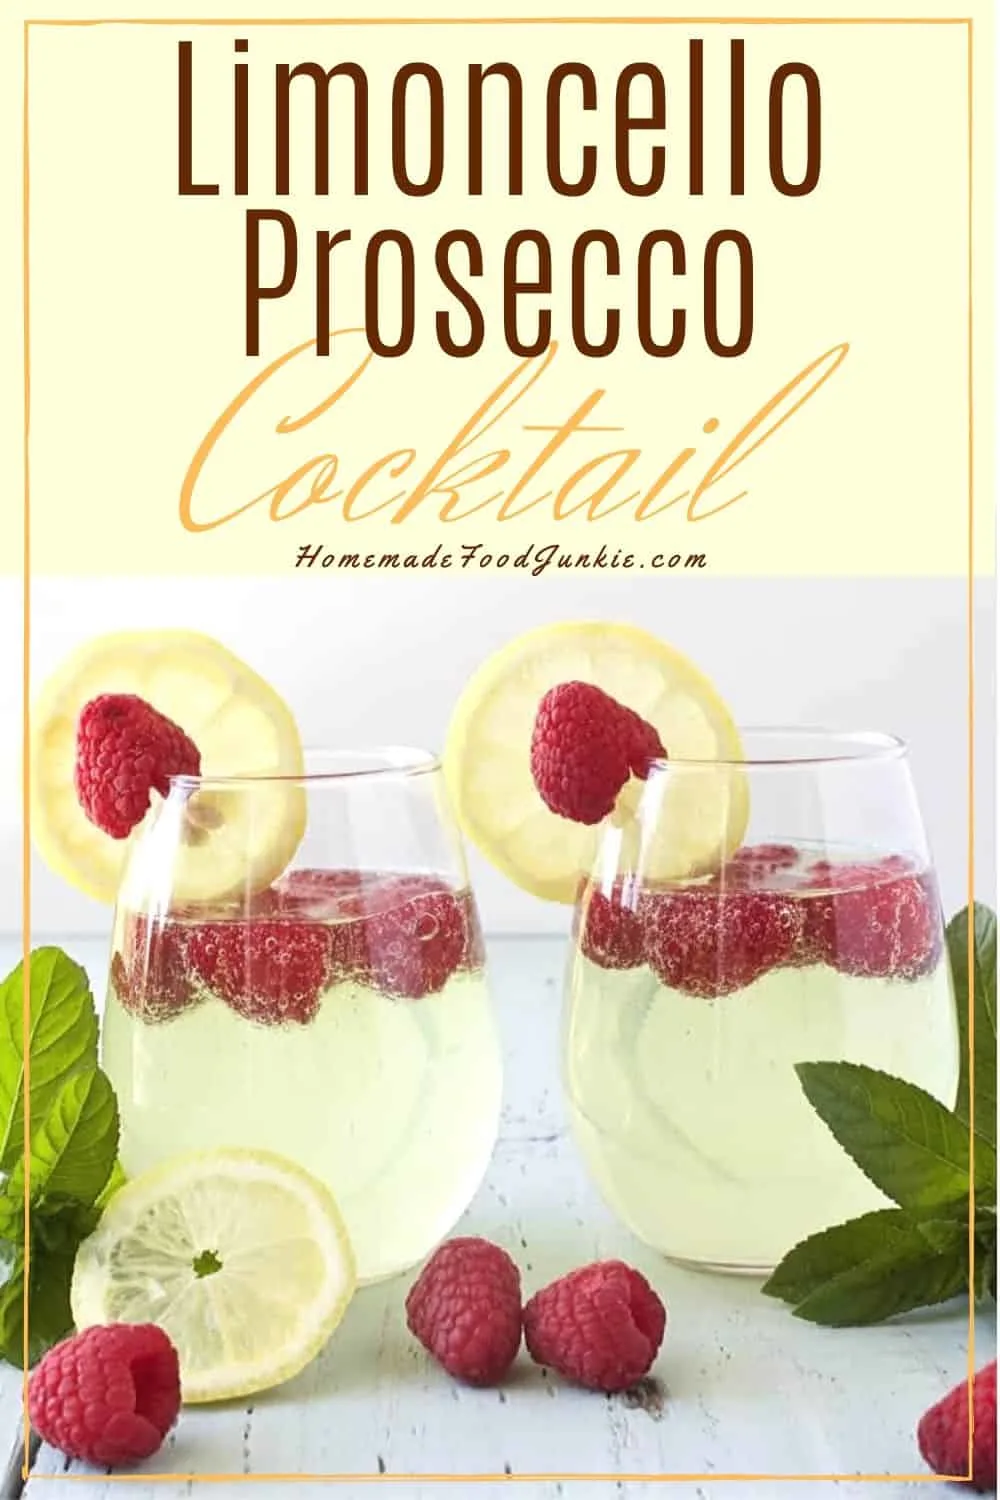 Limoncello Prosecco Cocktail-Pin Image